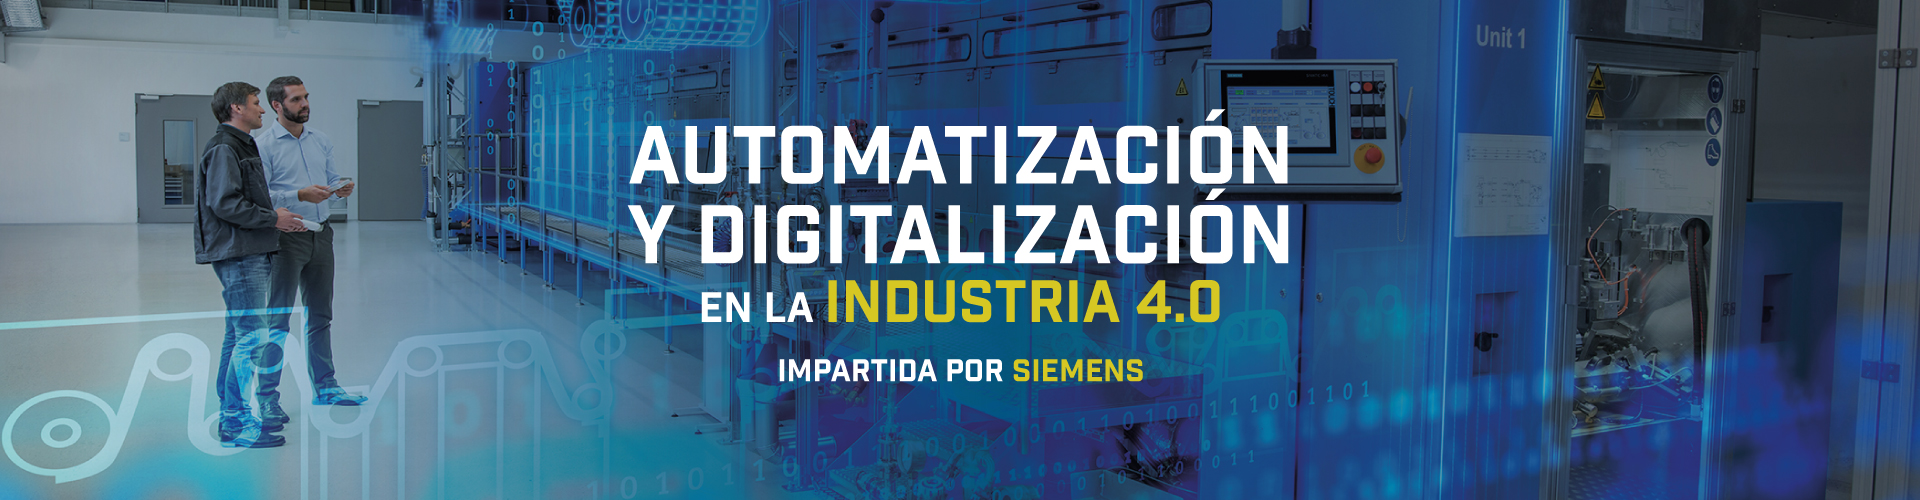 Automatización y Digitalización en la Industria 4.0